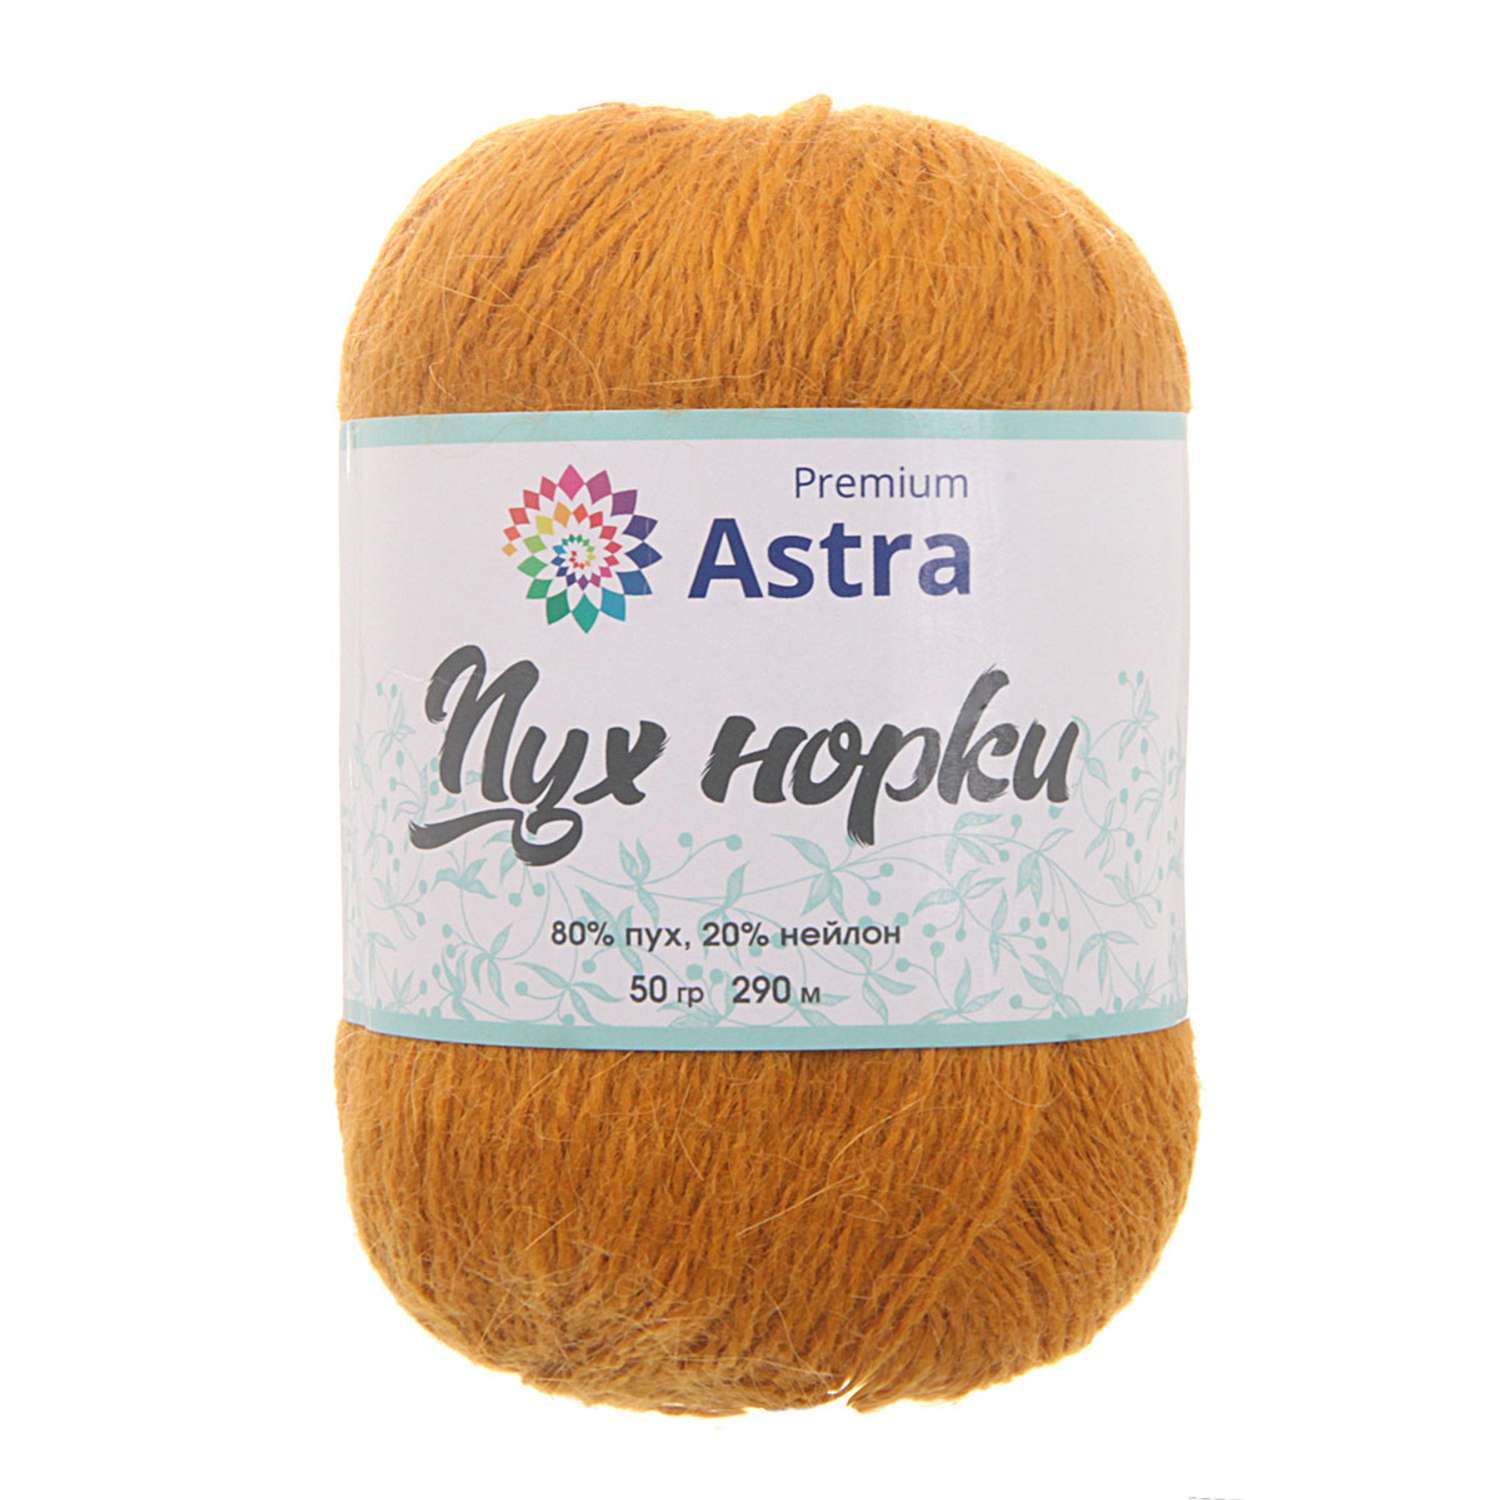 Пряжа Astra Premium Пух норки Mink yarn воздушная с ворсом 50 г 290 м 036 горчичный 1 моток - фото 6